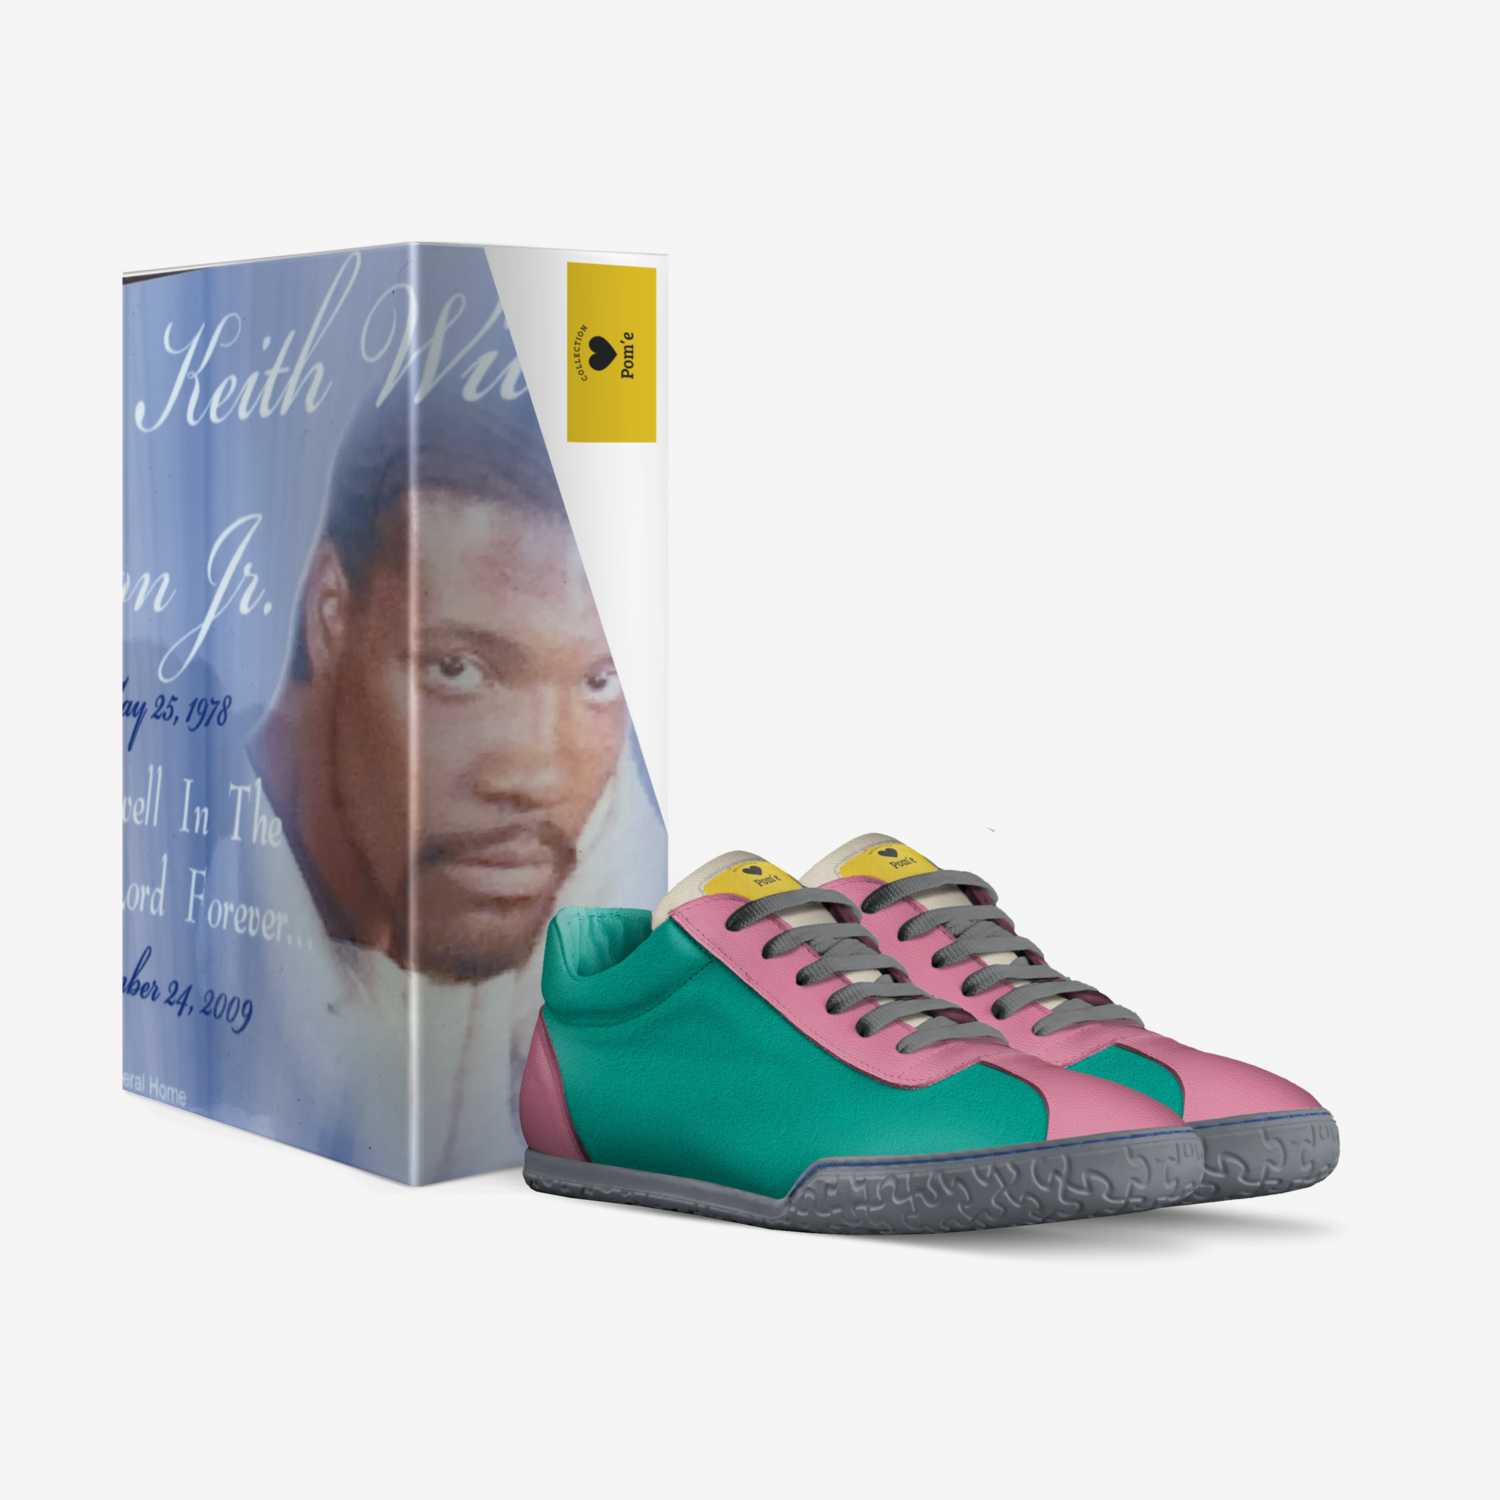 Pom'e custom made in Italy shoes by Kenyatta Hampton | Box view